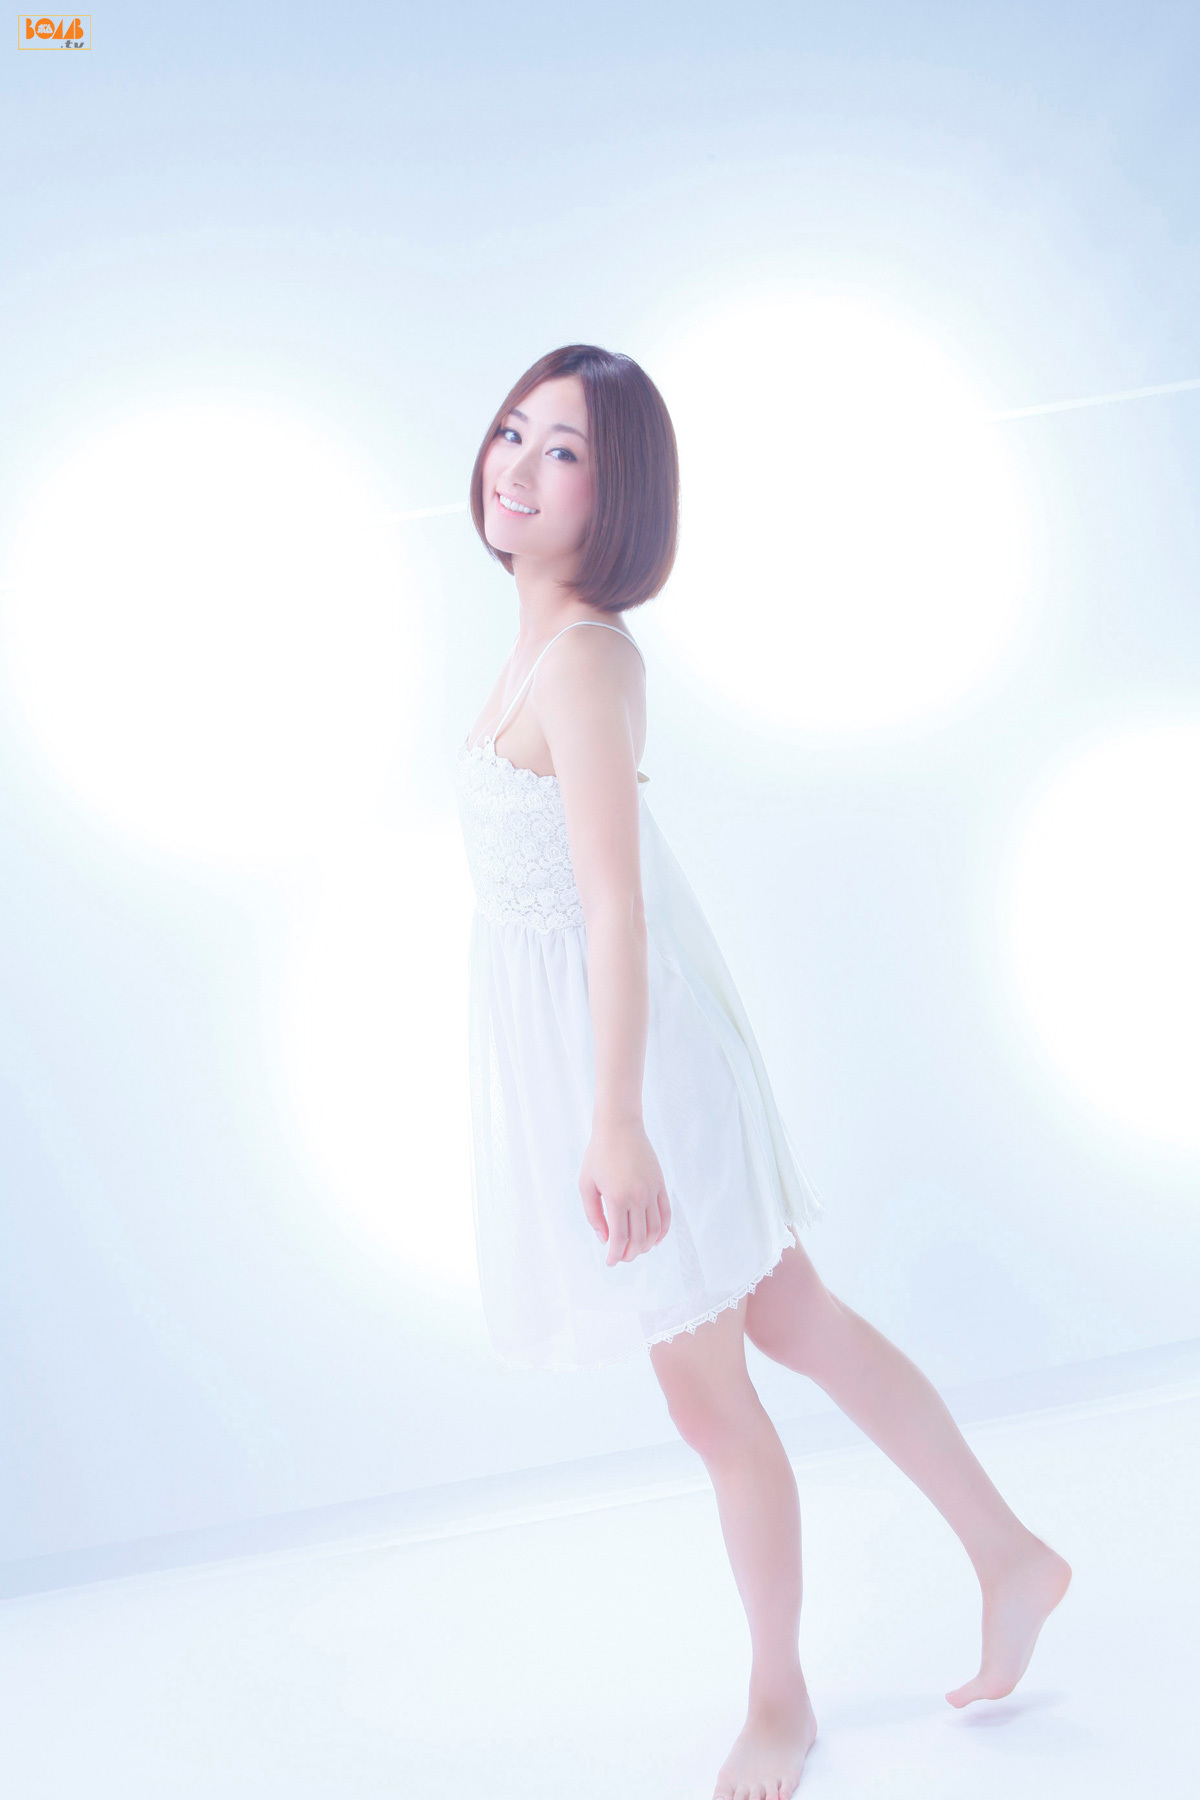 吉永美香 Yoshinaga-Mika [BOMB.TV] 20120101 美女图片